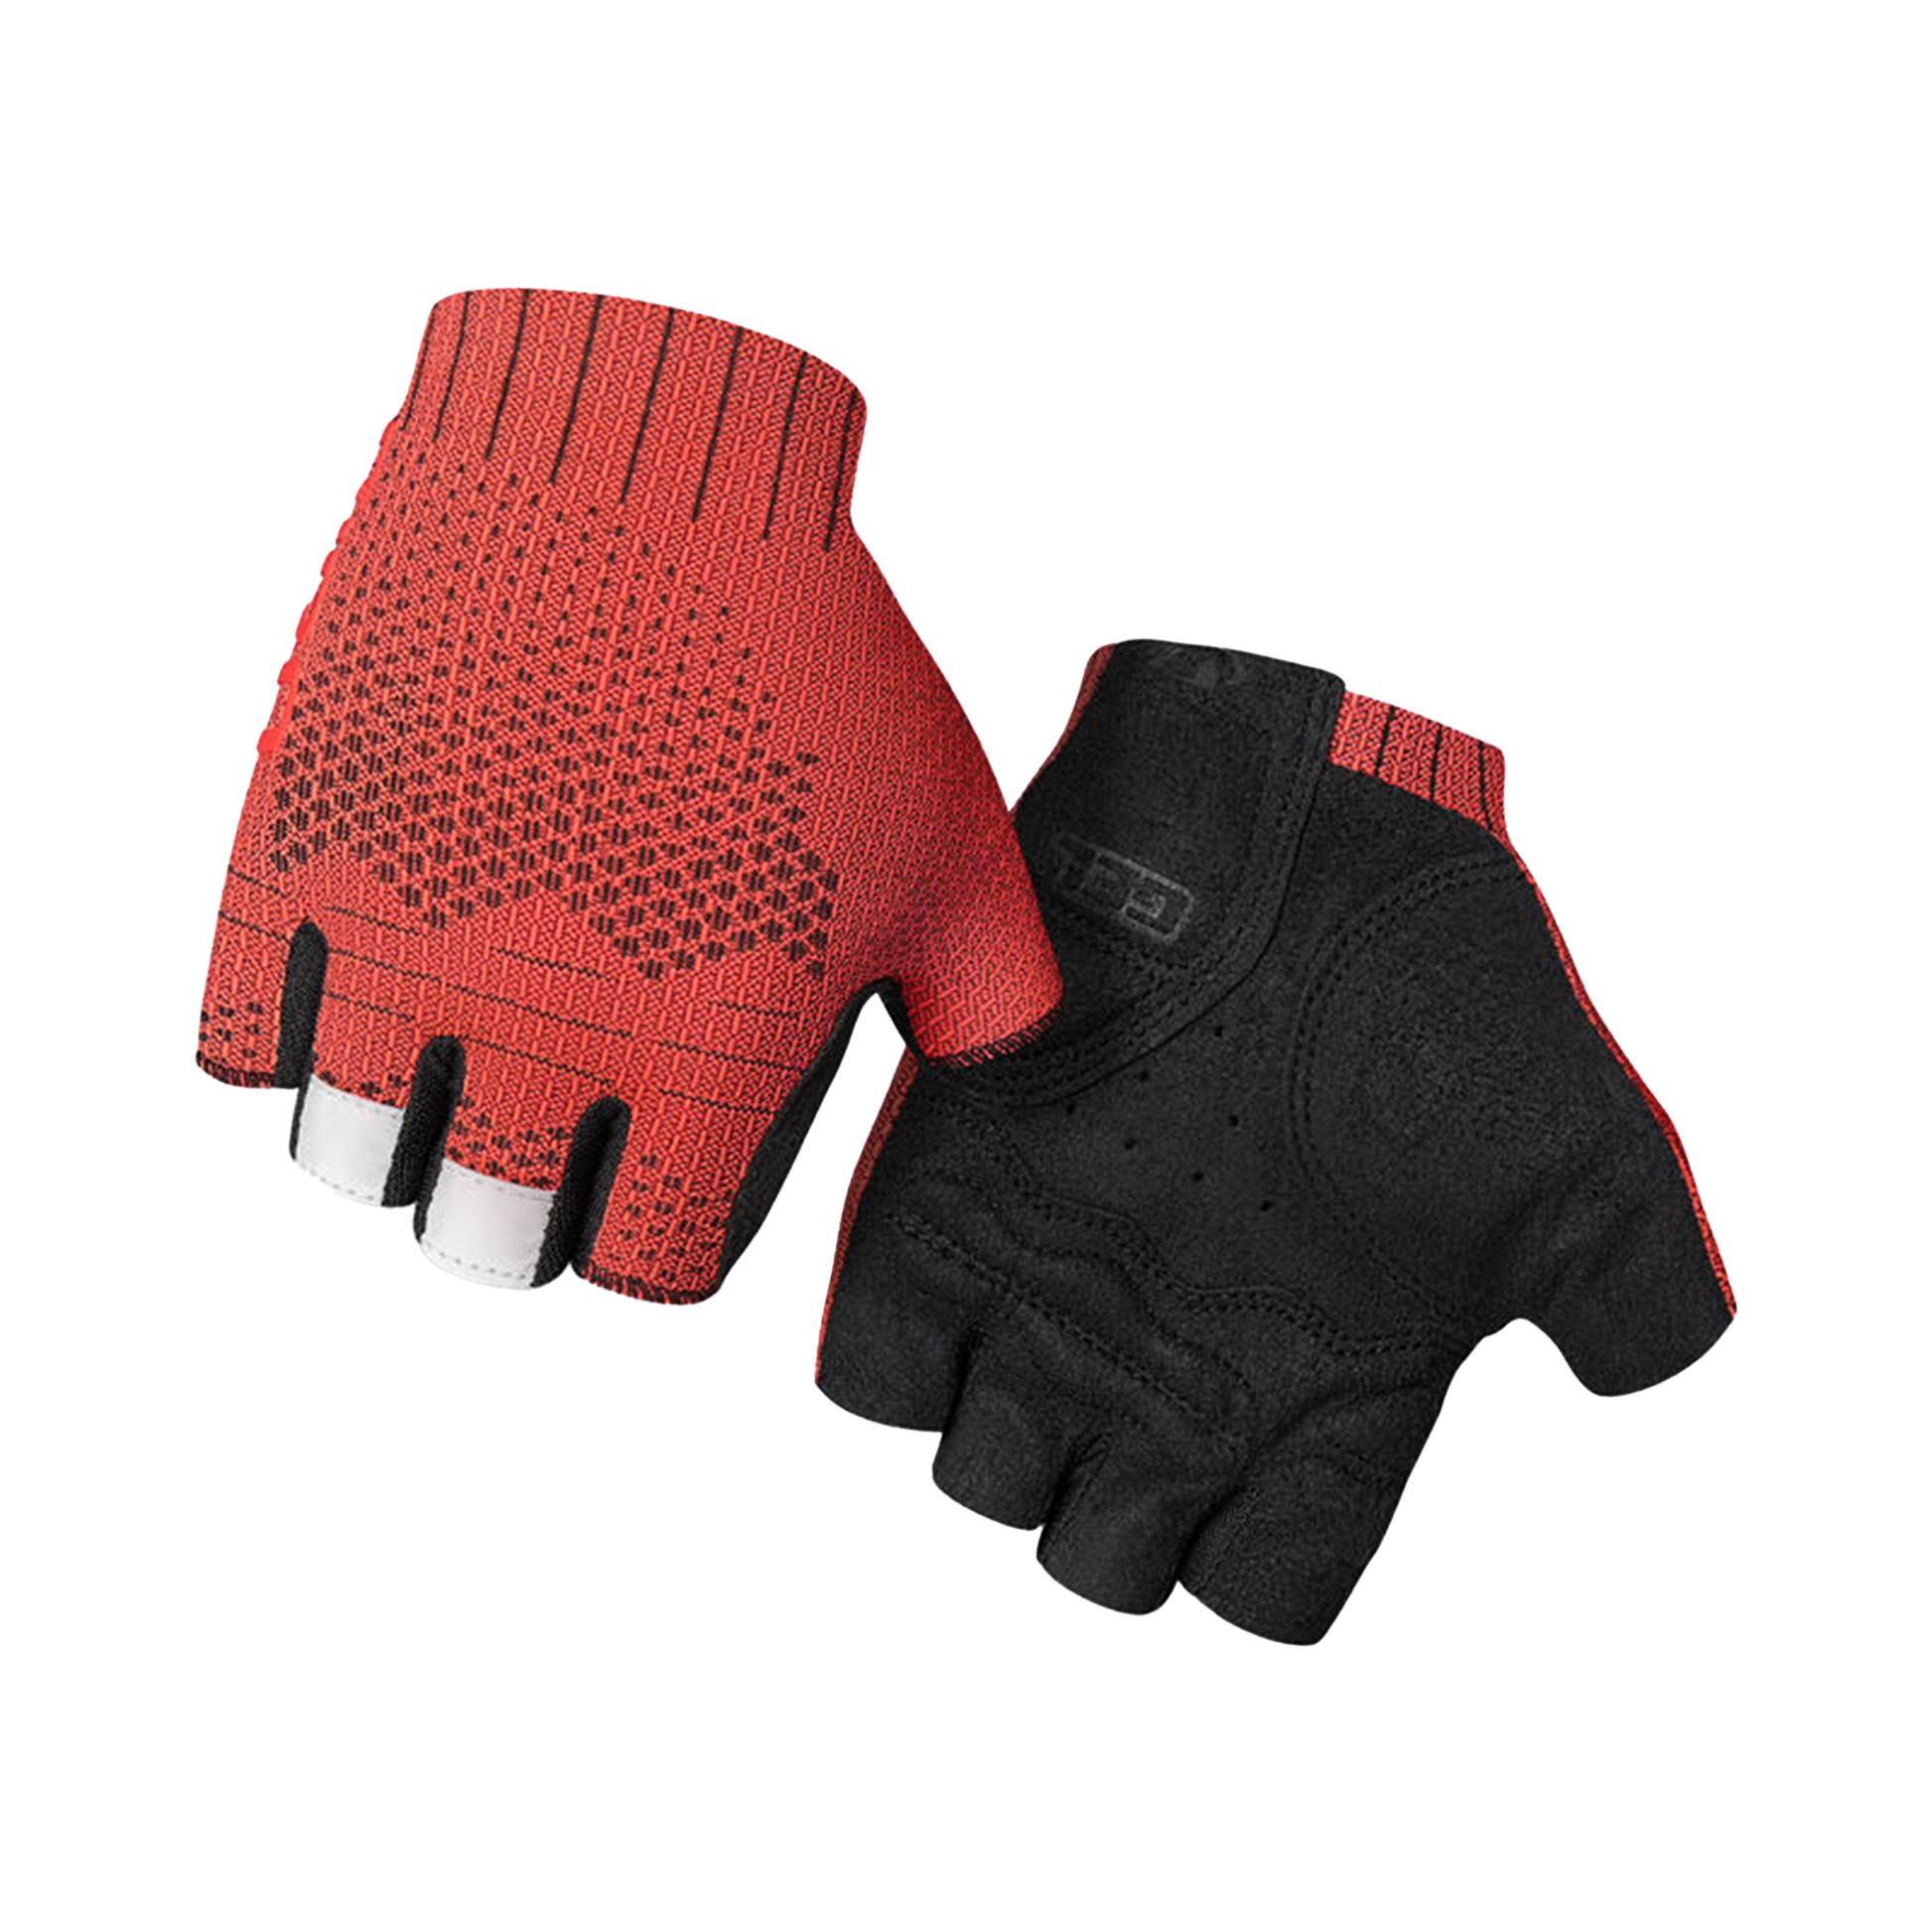 Giro Women's Xnetic Road Glove Trim Red Bike Gloves